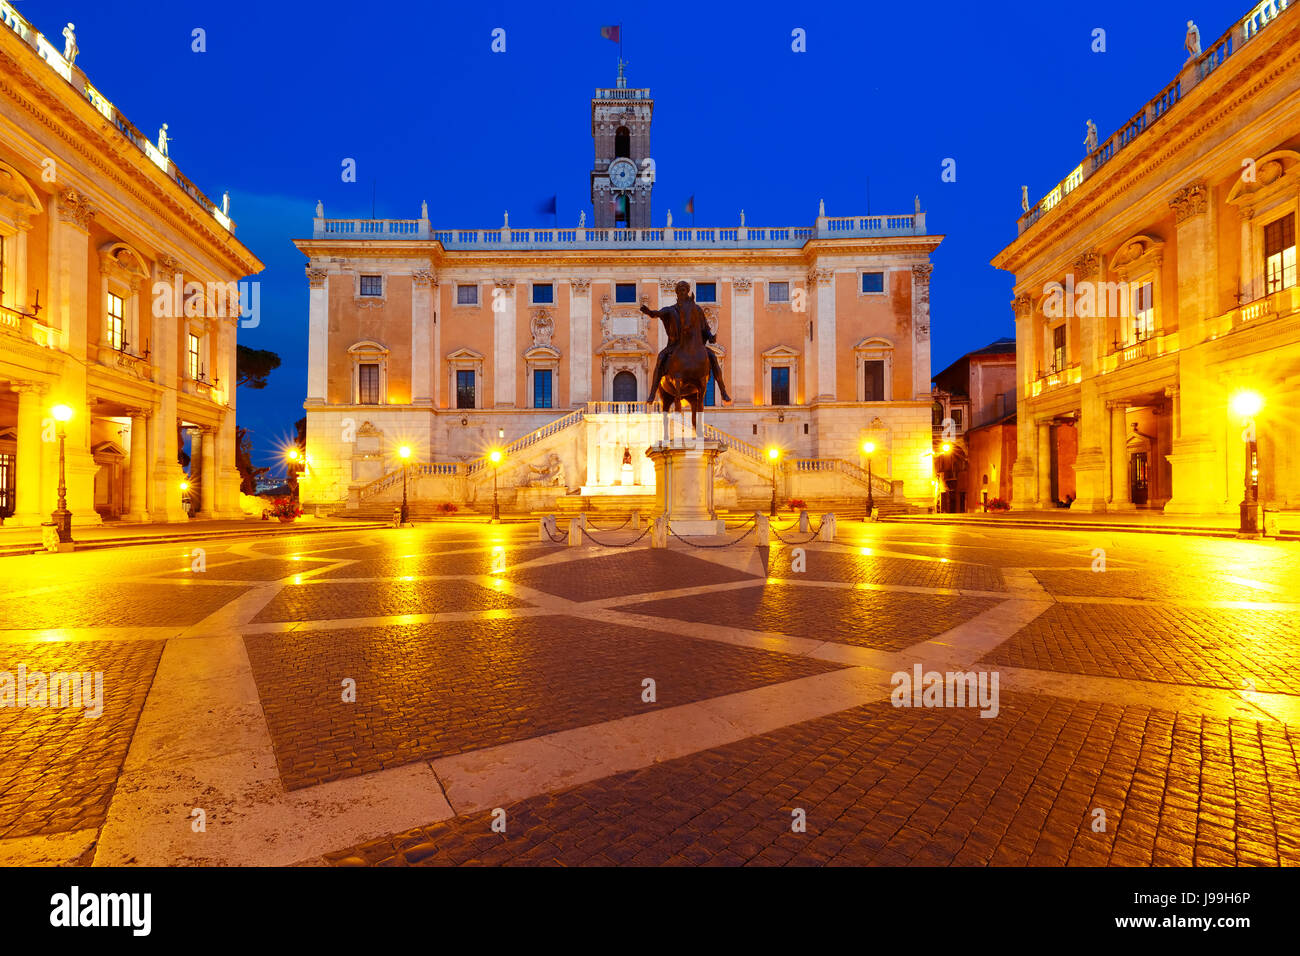 Campidoglio square on Capitoline Hill, Rome, Italy Stock Photo